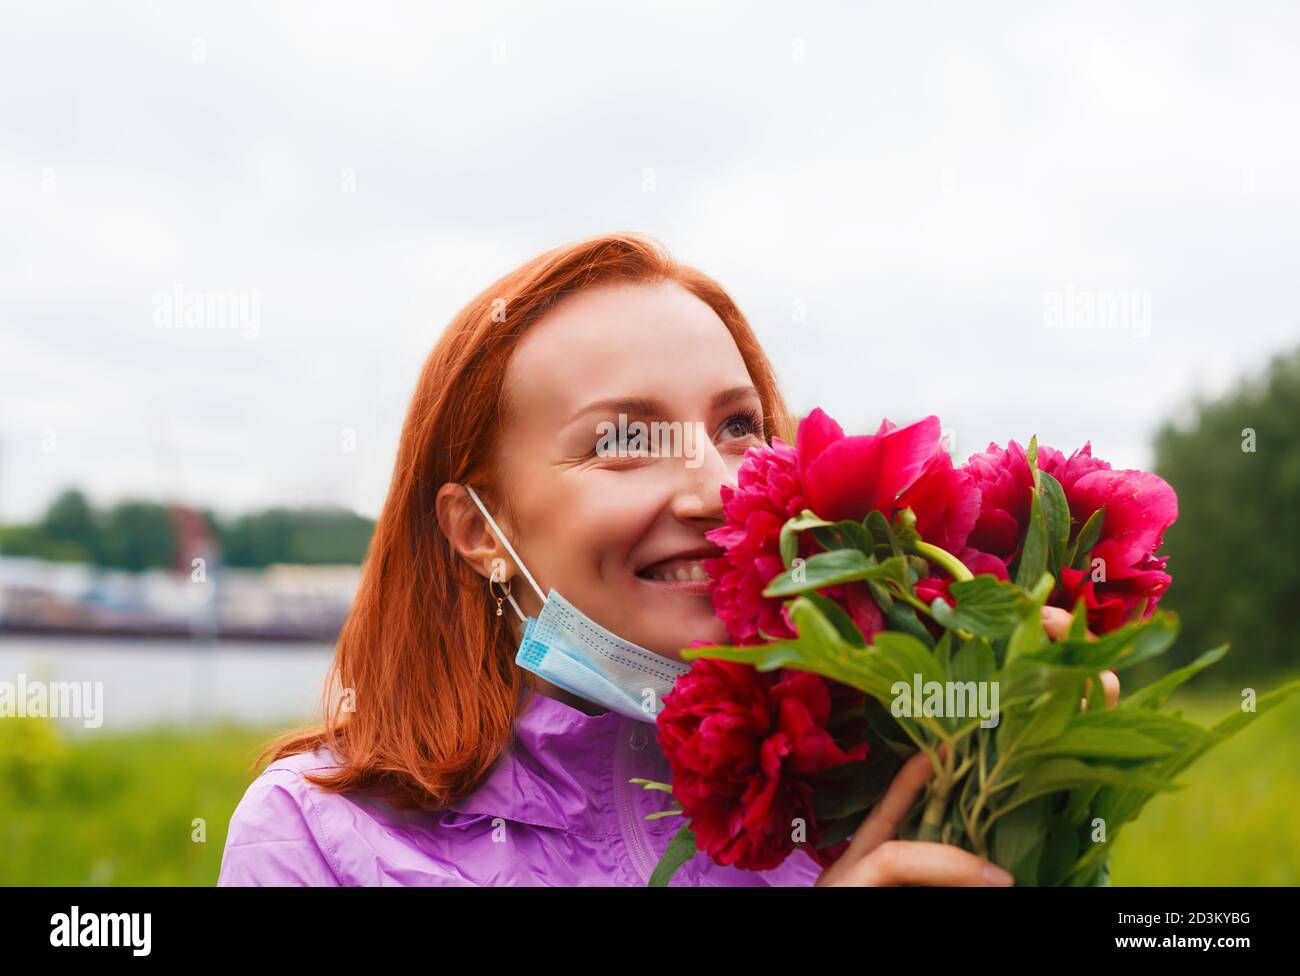 Reprise après le coronavirus. Souriante heureuse femme rouge sniffs fleurs roses Banque D'Images